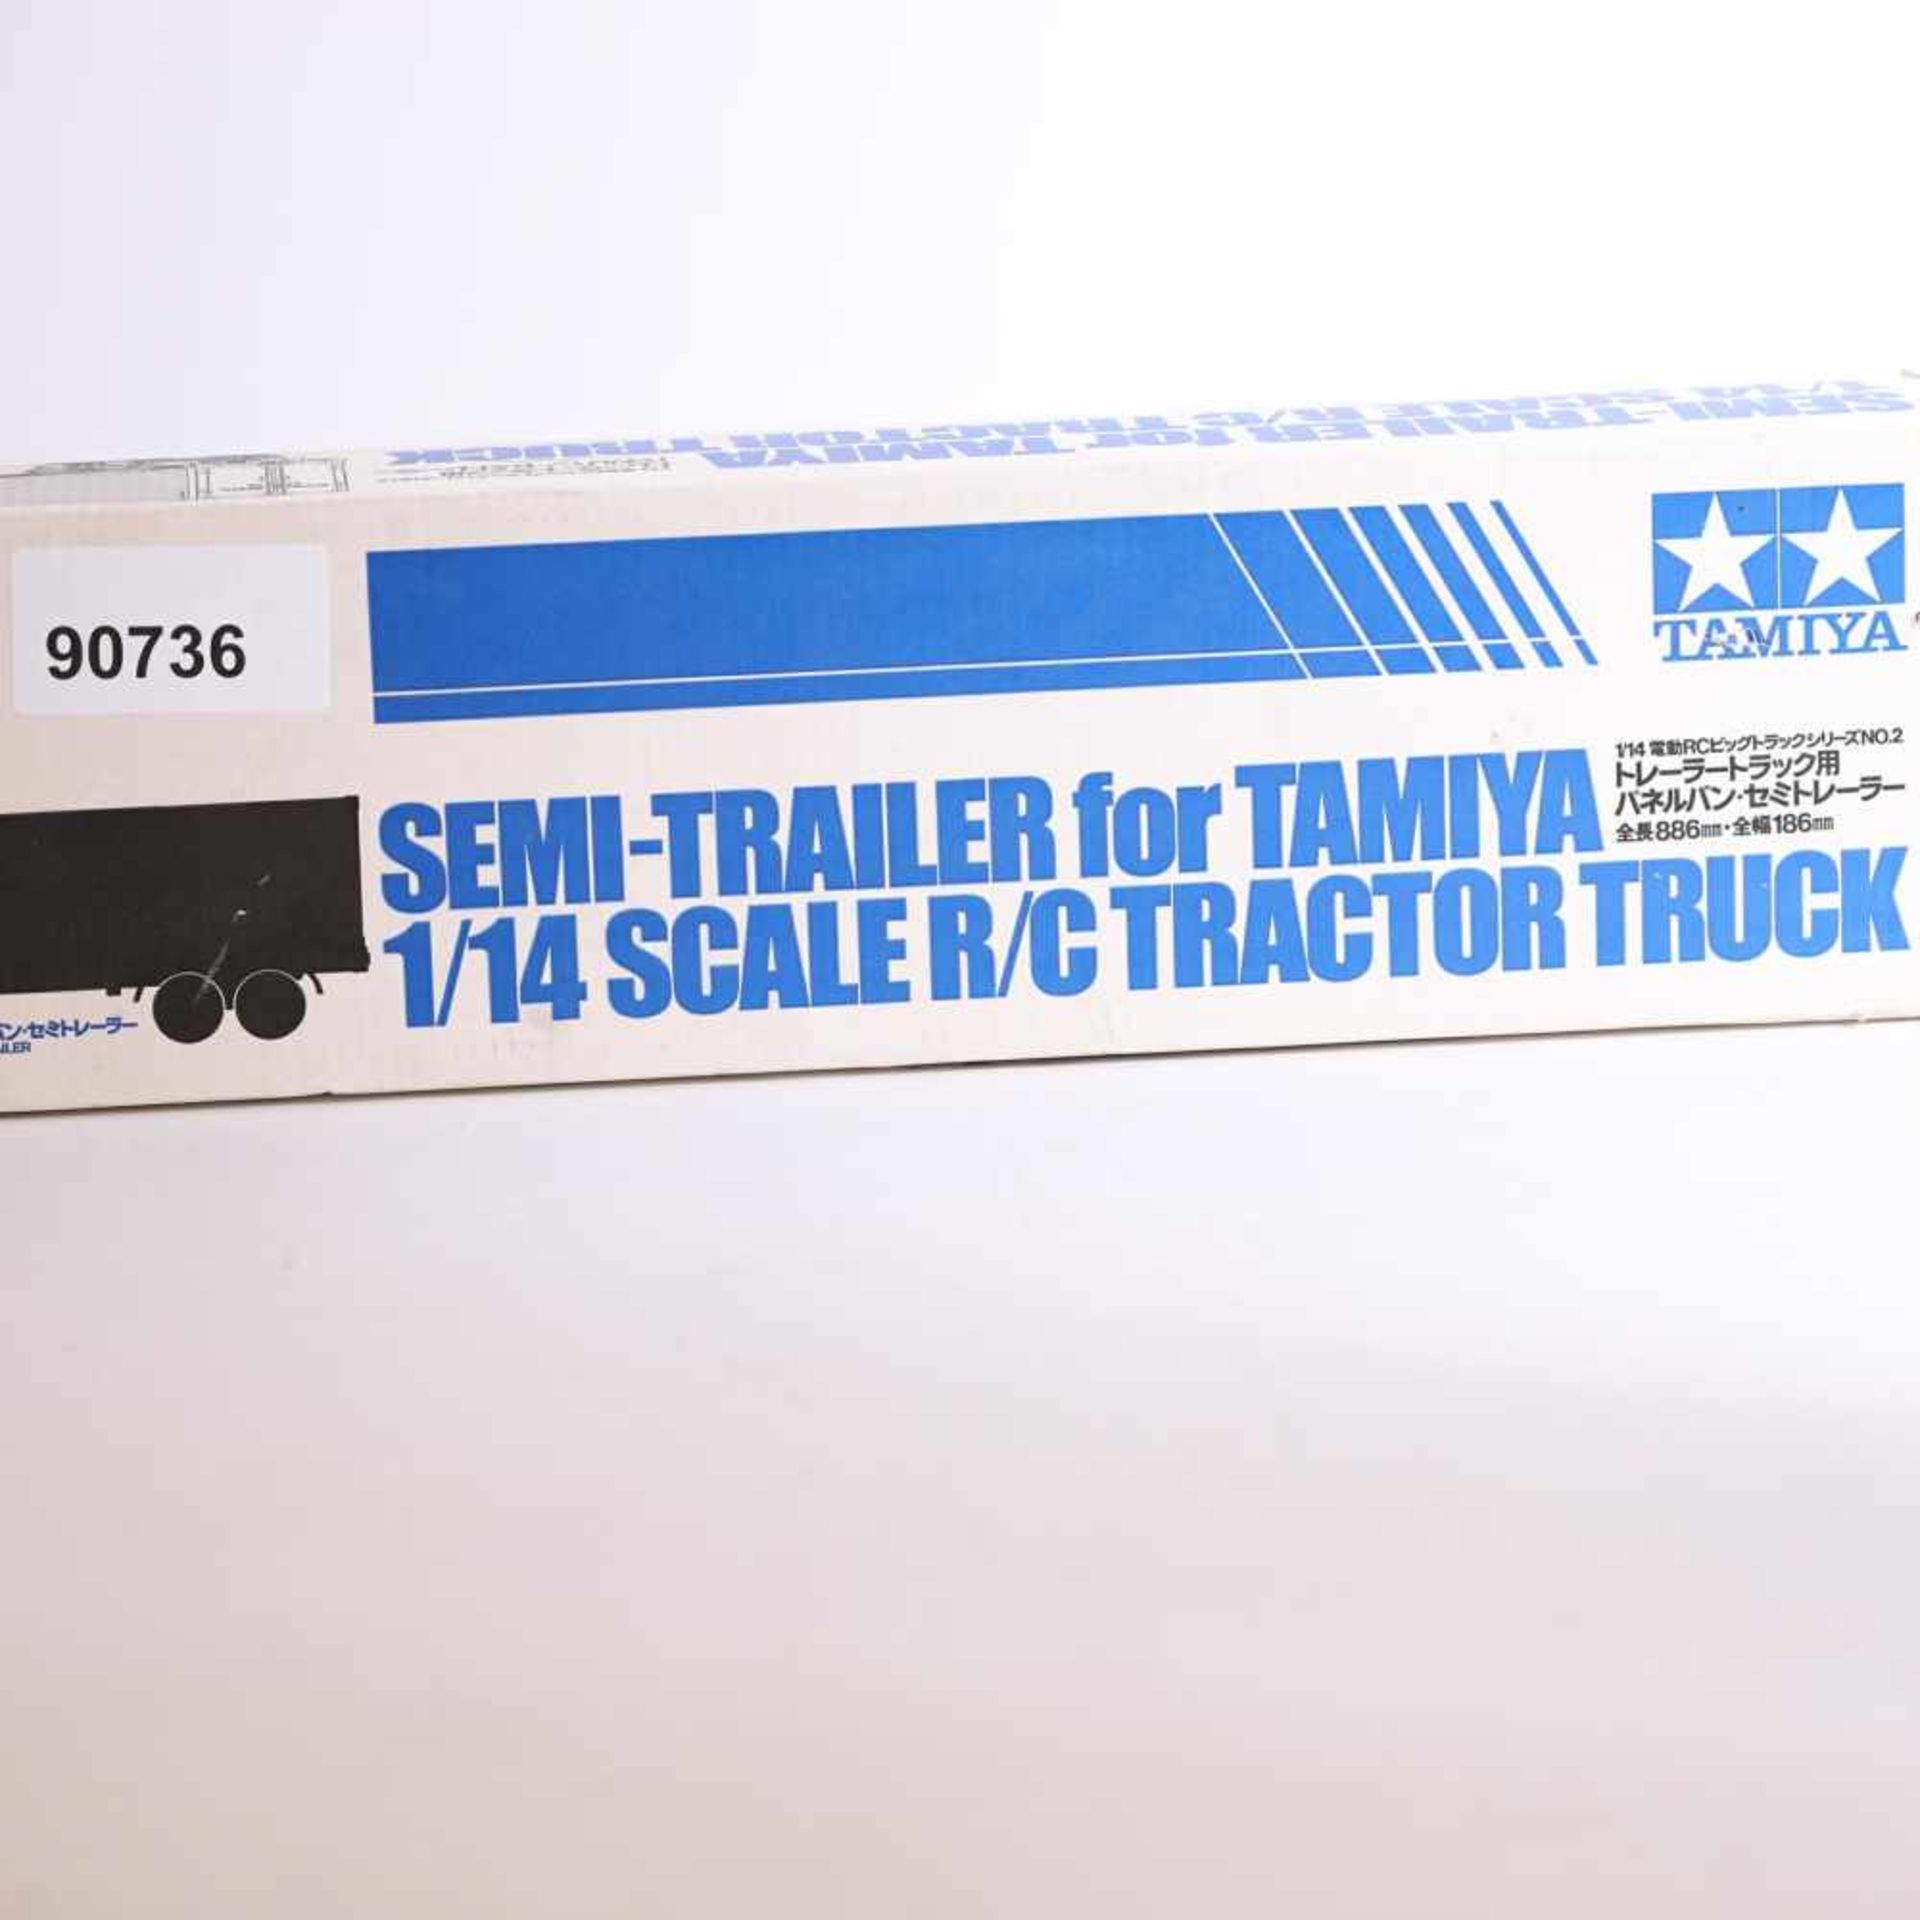 Tamiya Semi-Trailer 1/14, Traktor Truck ITEM 56302**28800, OVP, leichte Lagerspuren.- - -20.00 %